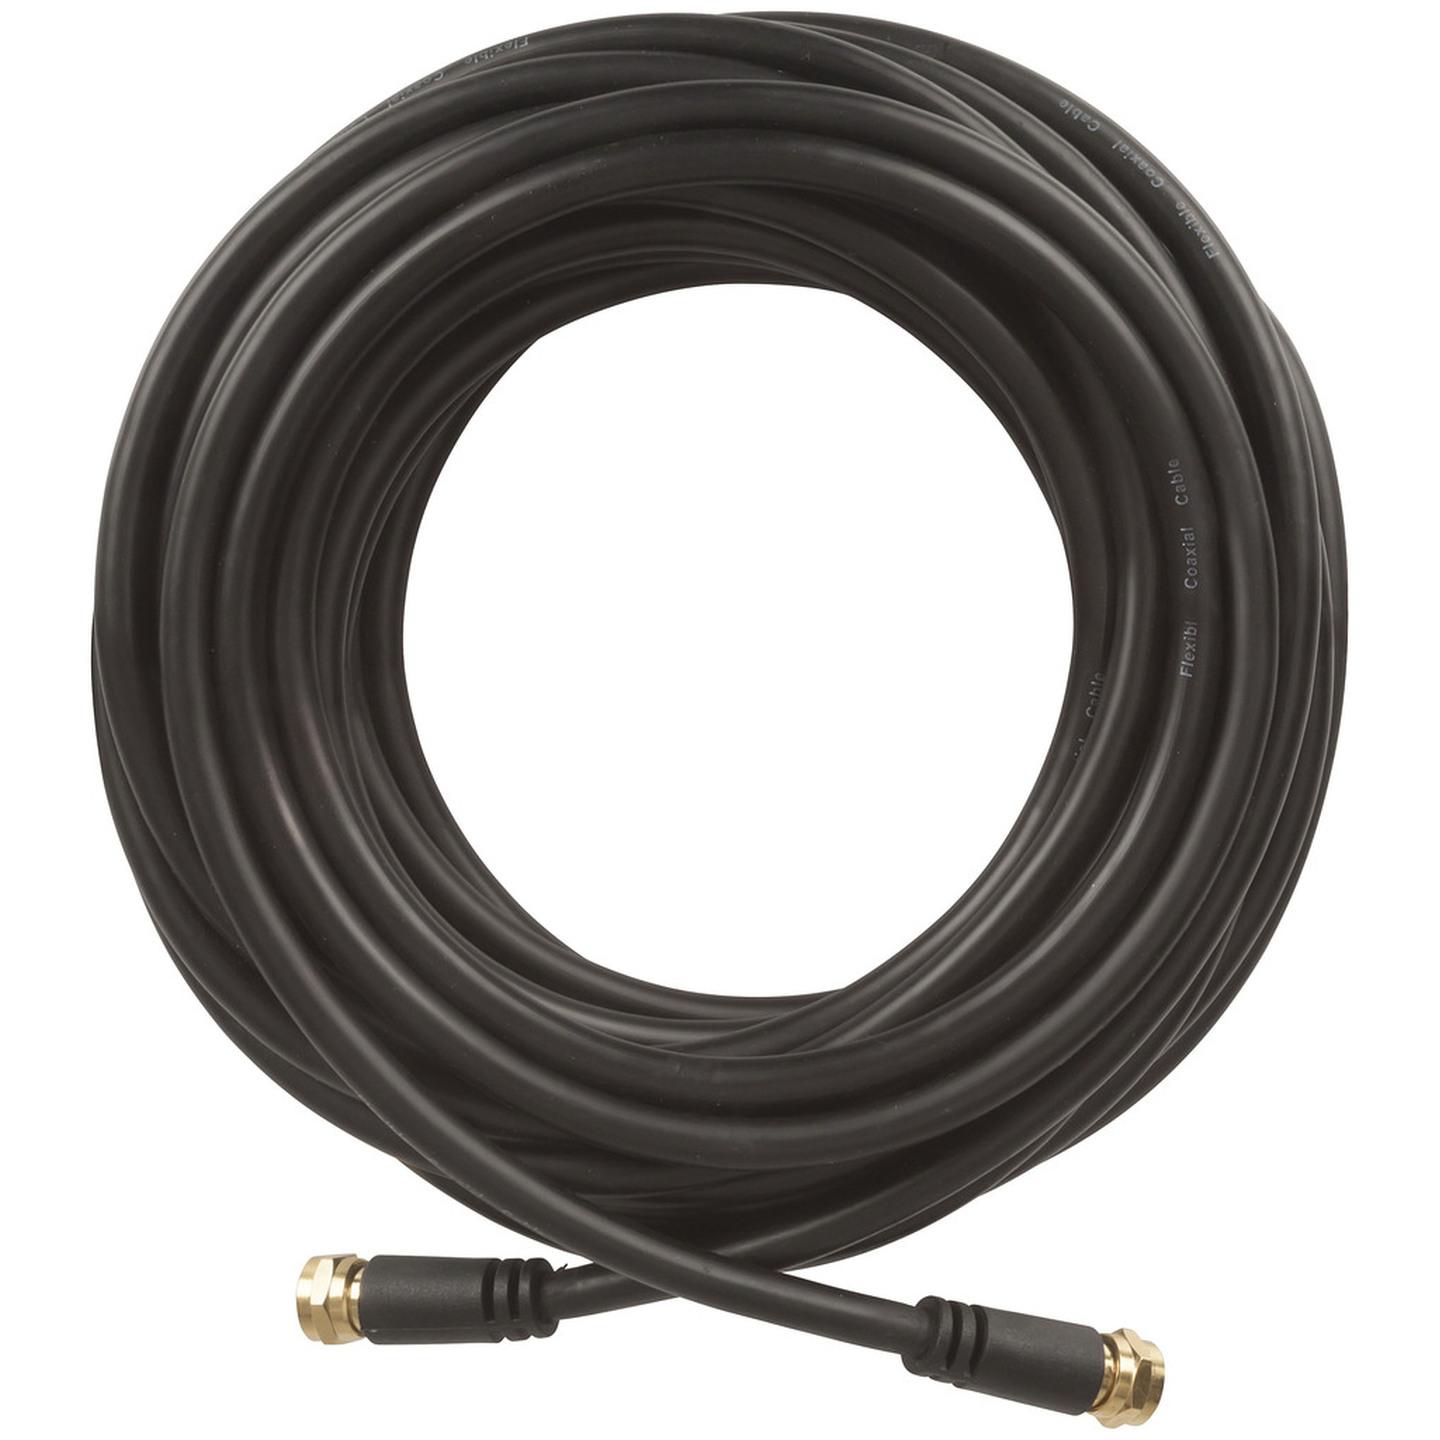 Concord 10m Flexible F Plug to F Plug Coax Cable